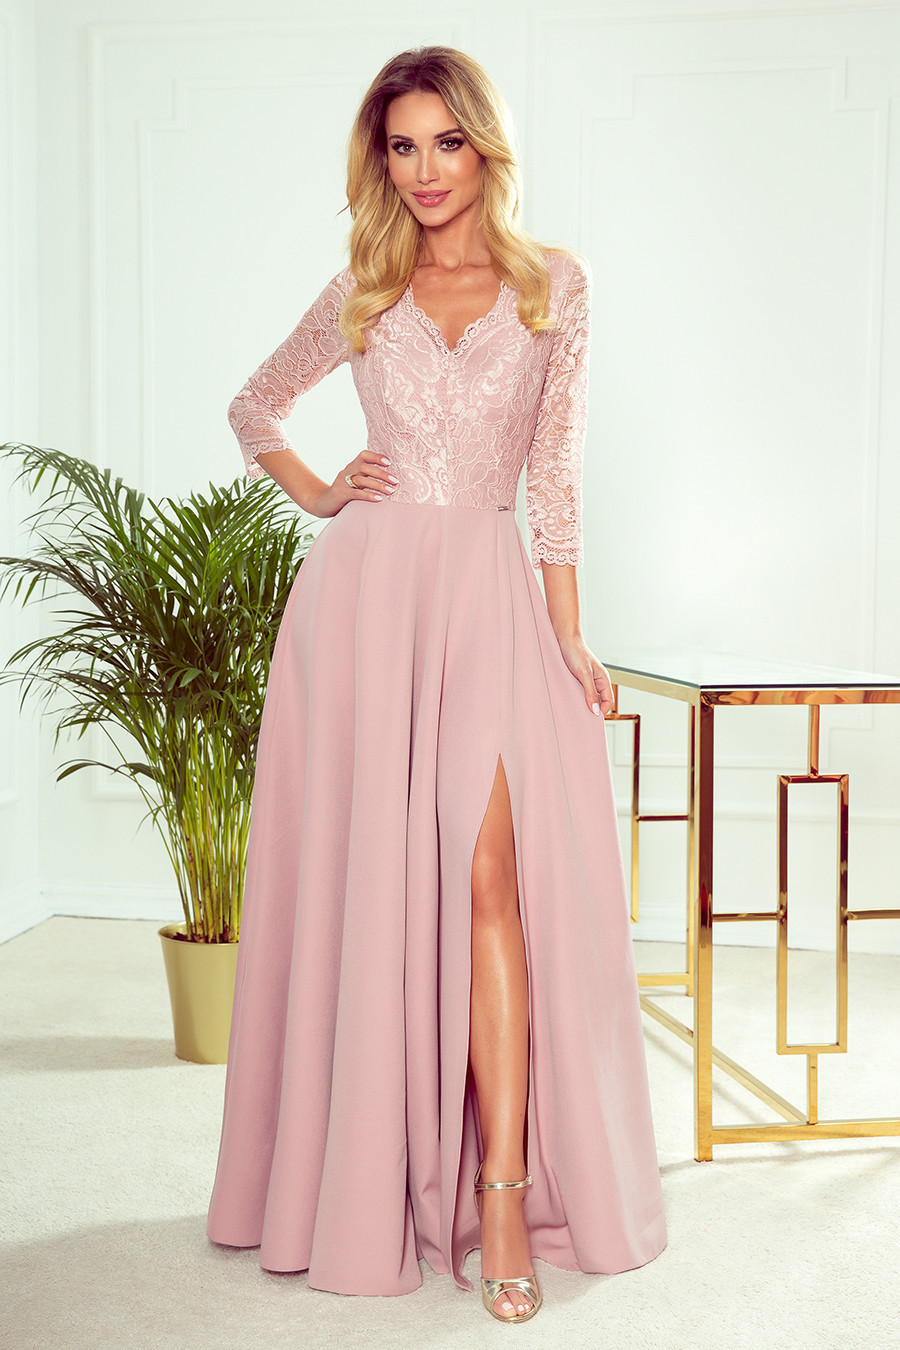 AMBER - Elegantní dlouhé krajkové dámské šaty v pudrově růžové barvě s dekoltem 309-4 L